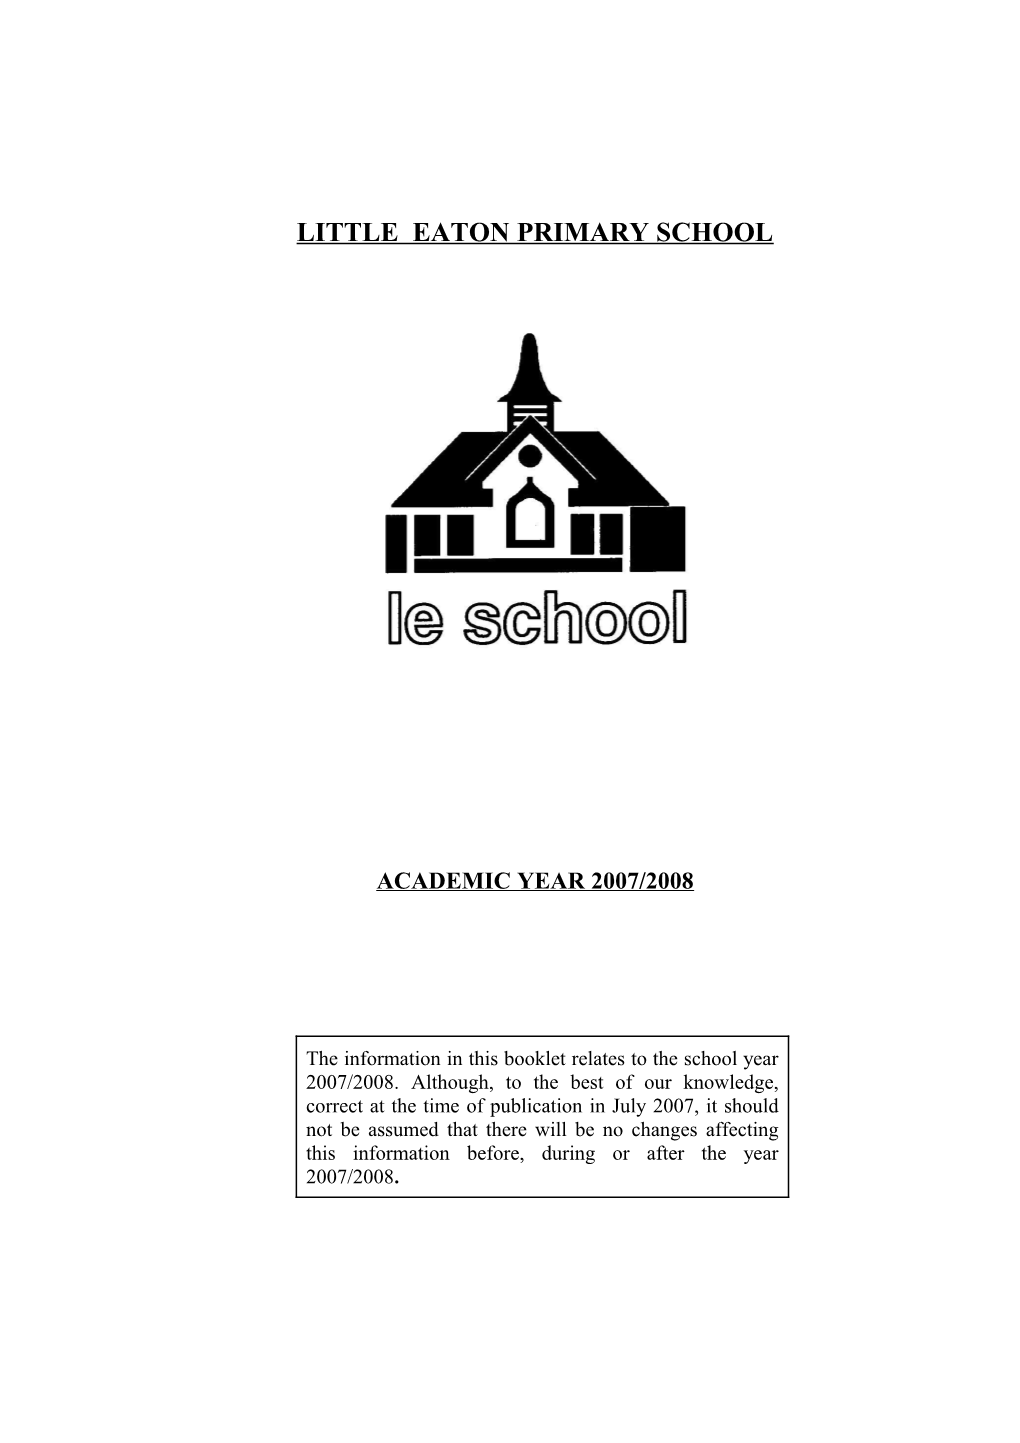 Little Eaton Primary School